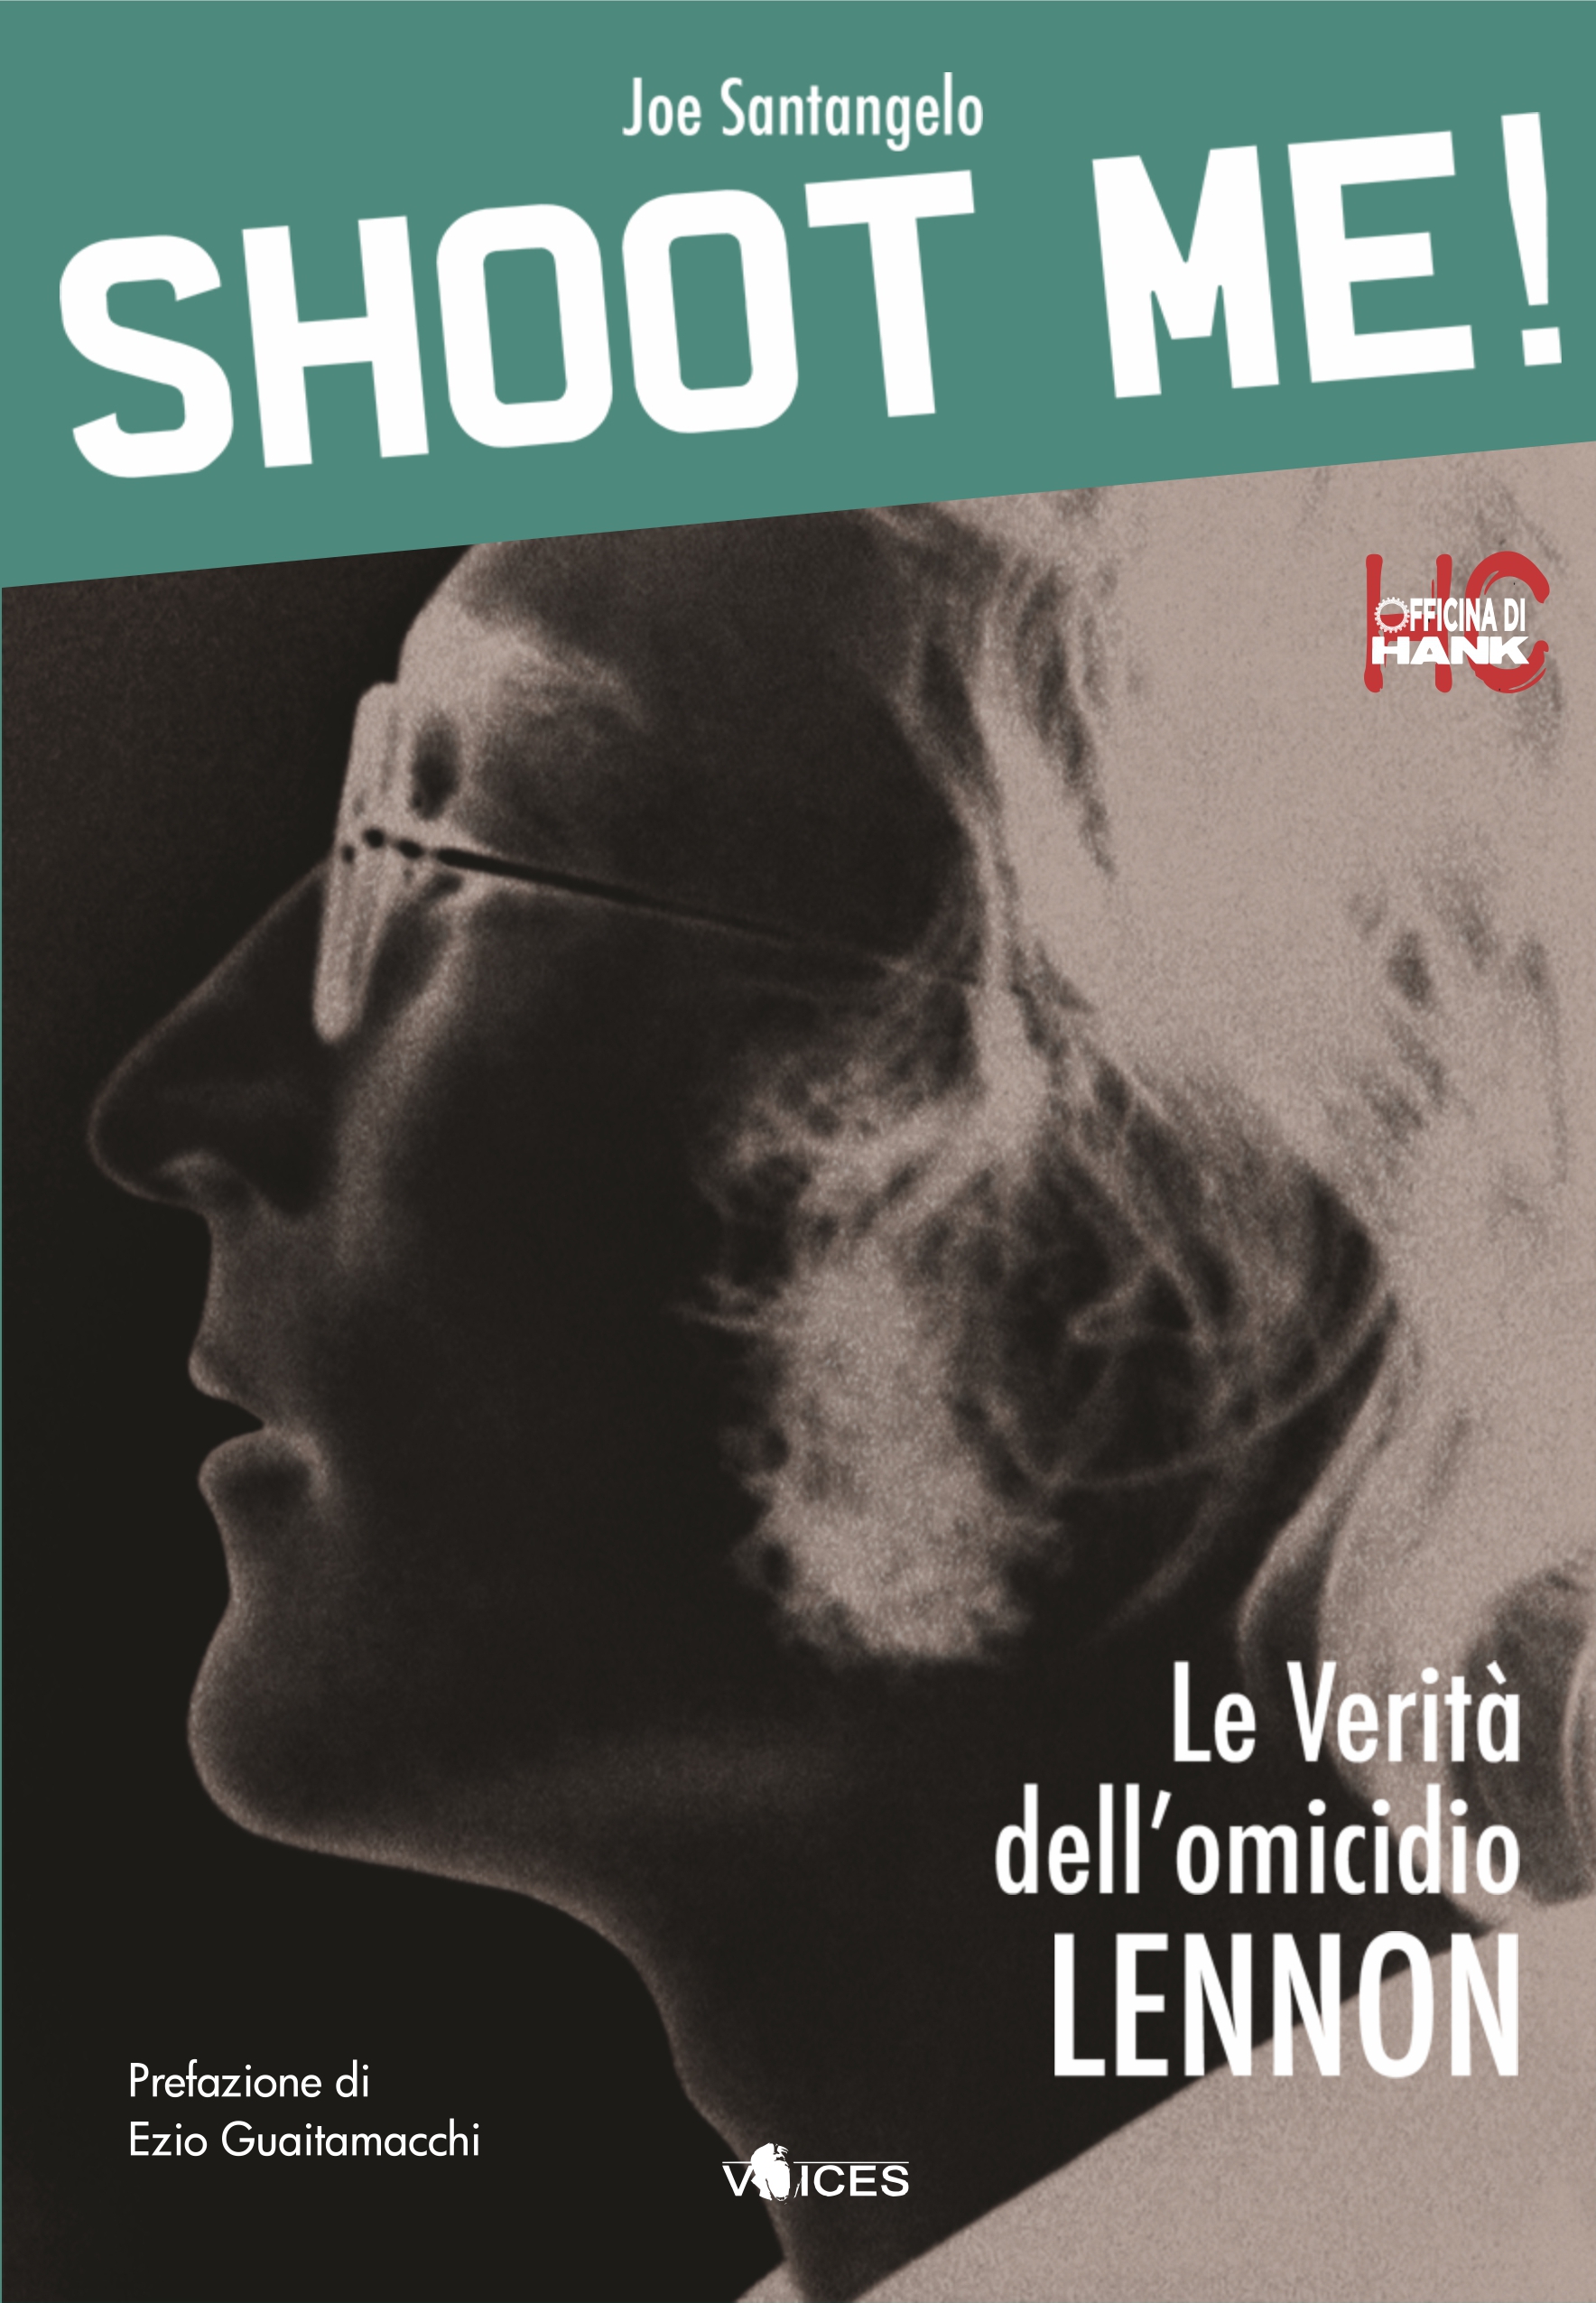 40 anni fa veniva assassinato JOHN LENNON... Oggi viene ripubblicato, con edizione ampliata e altri dettagli il libro di Joe Sanatngelo...SHOOT ME!